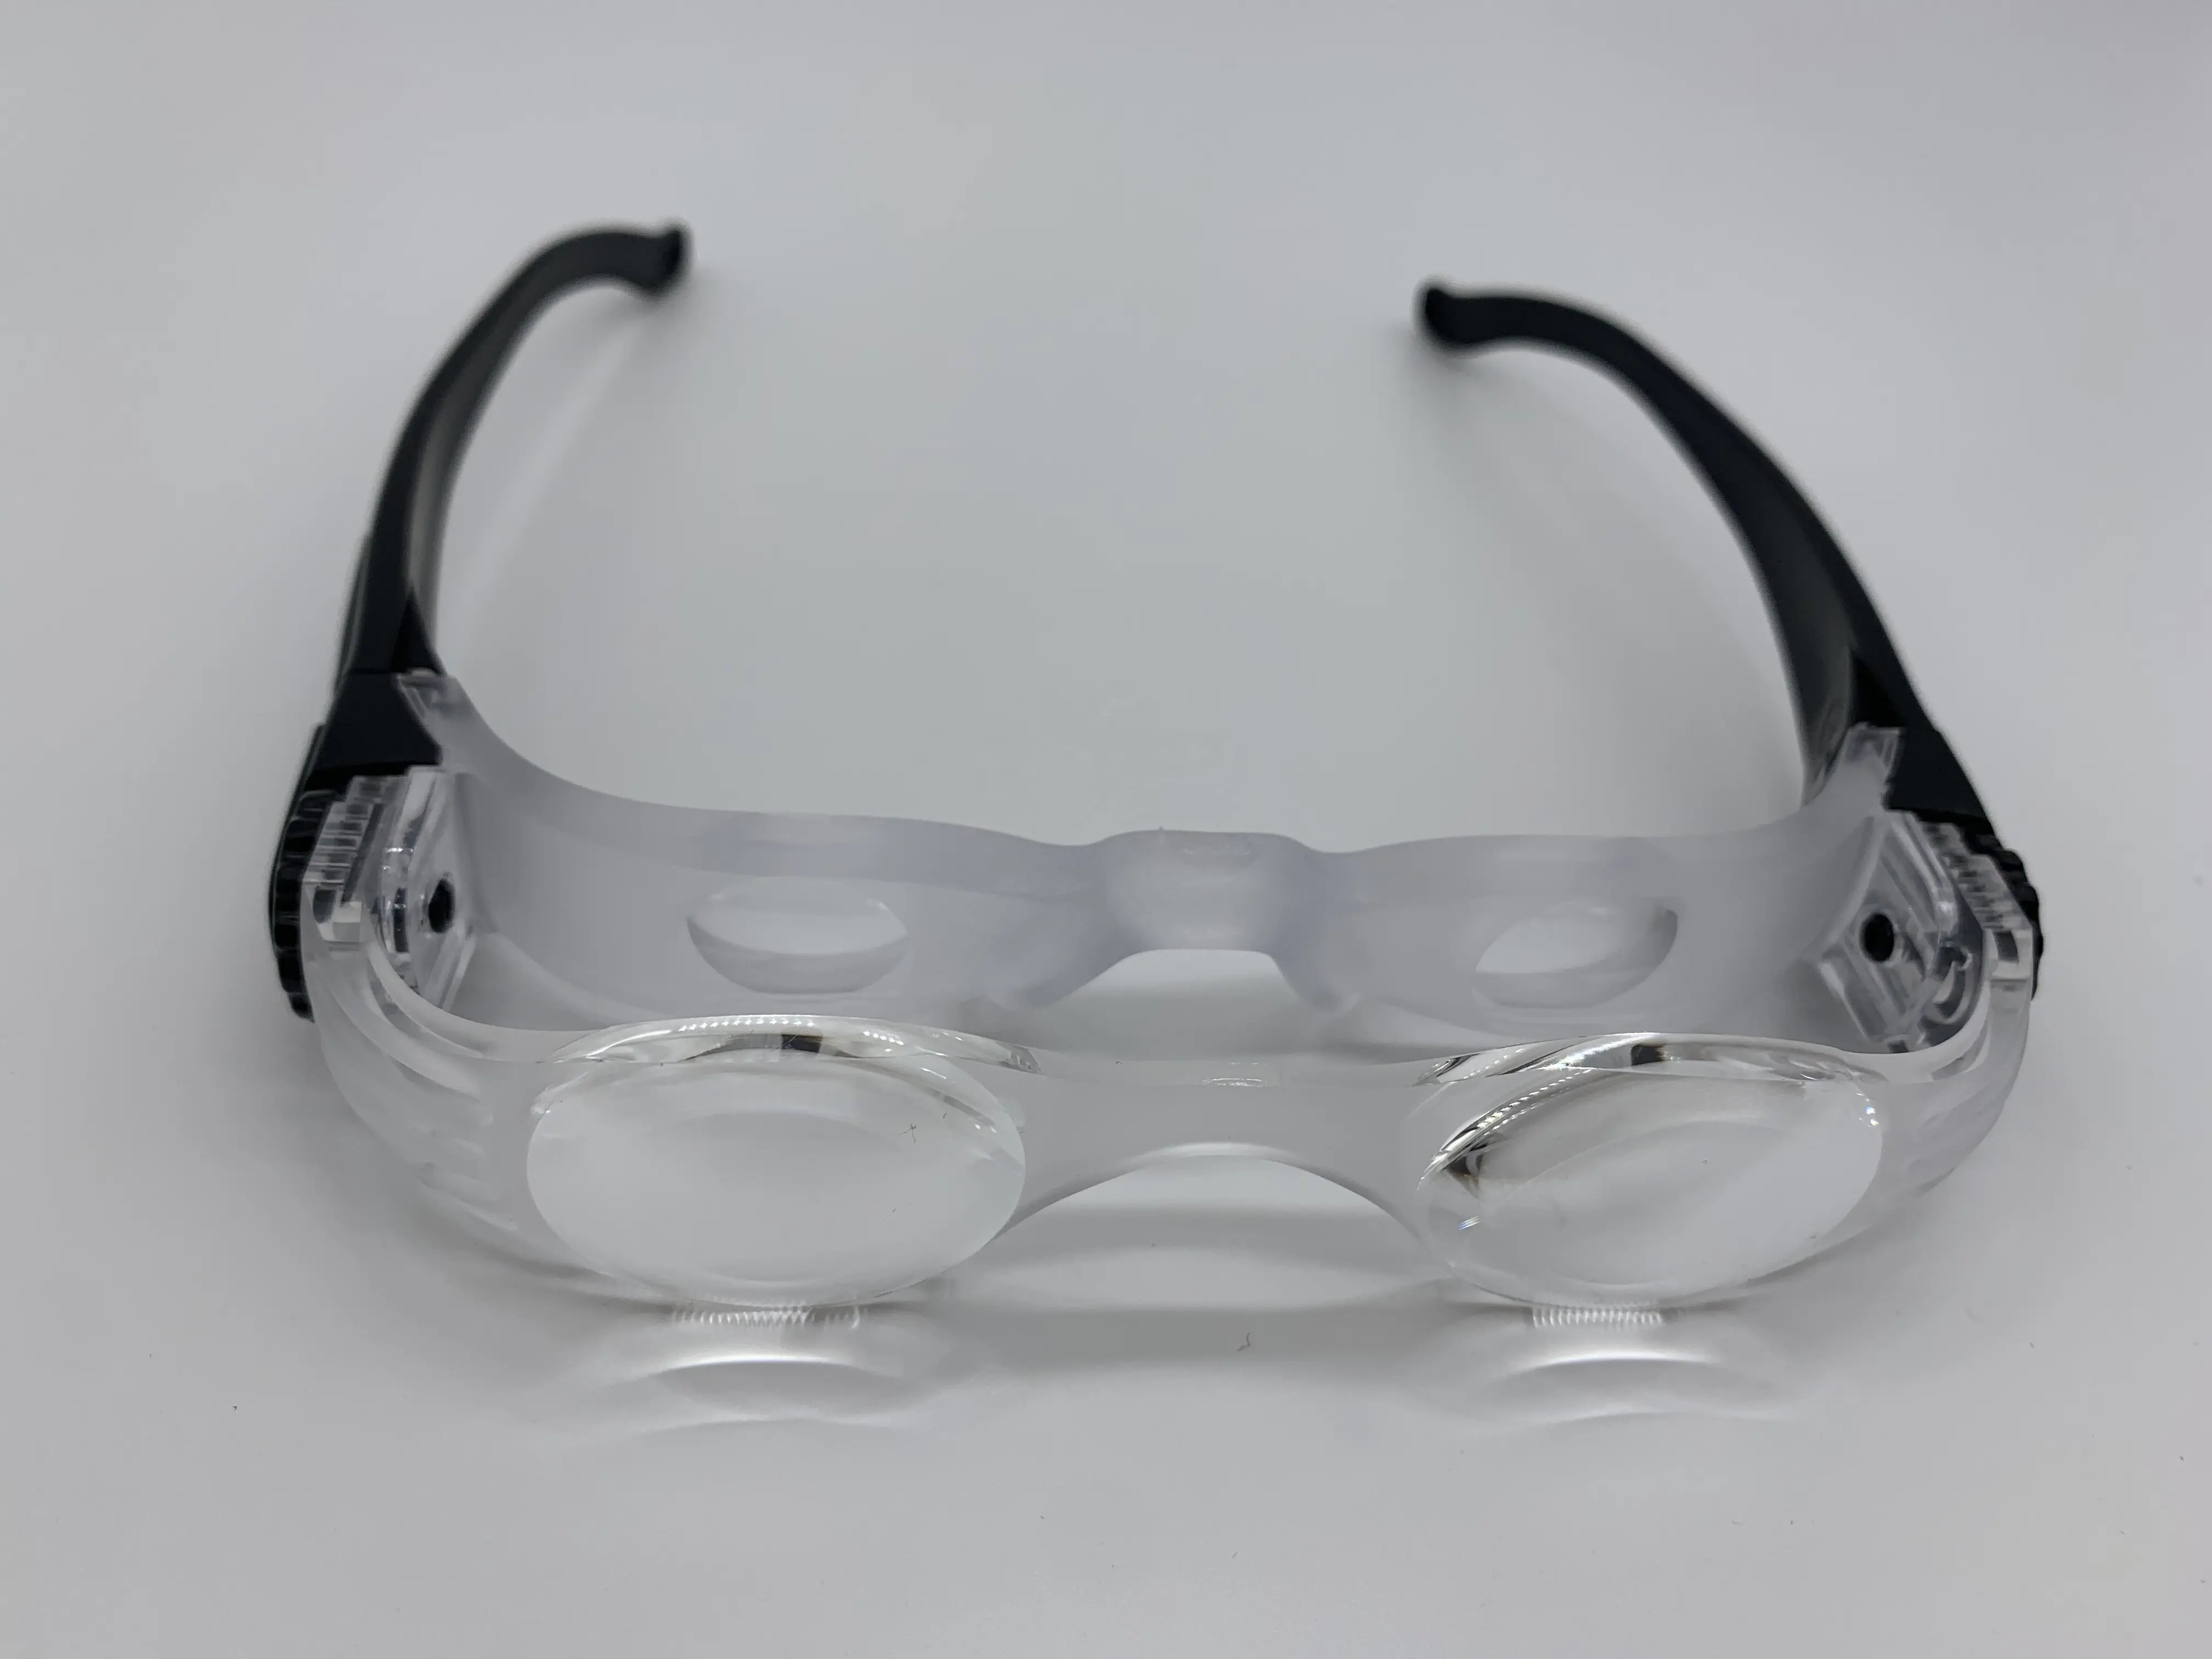 แว่นสายตาขยาย Argus,แว่นขยายสำหรับ TV 35มม. มีระยะอ่านหนังสือพลาสติก PP 3ม.